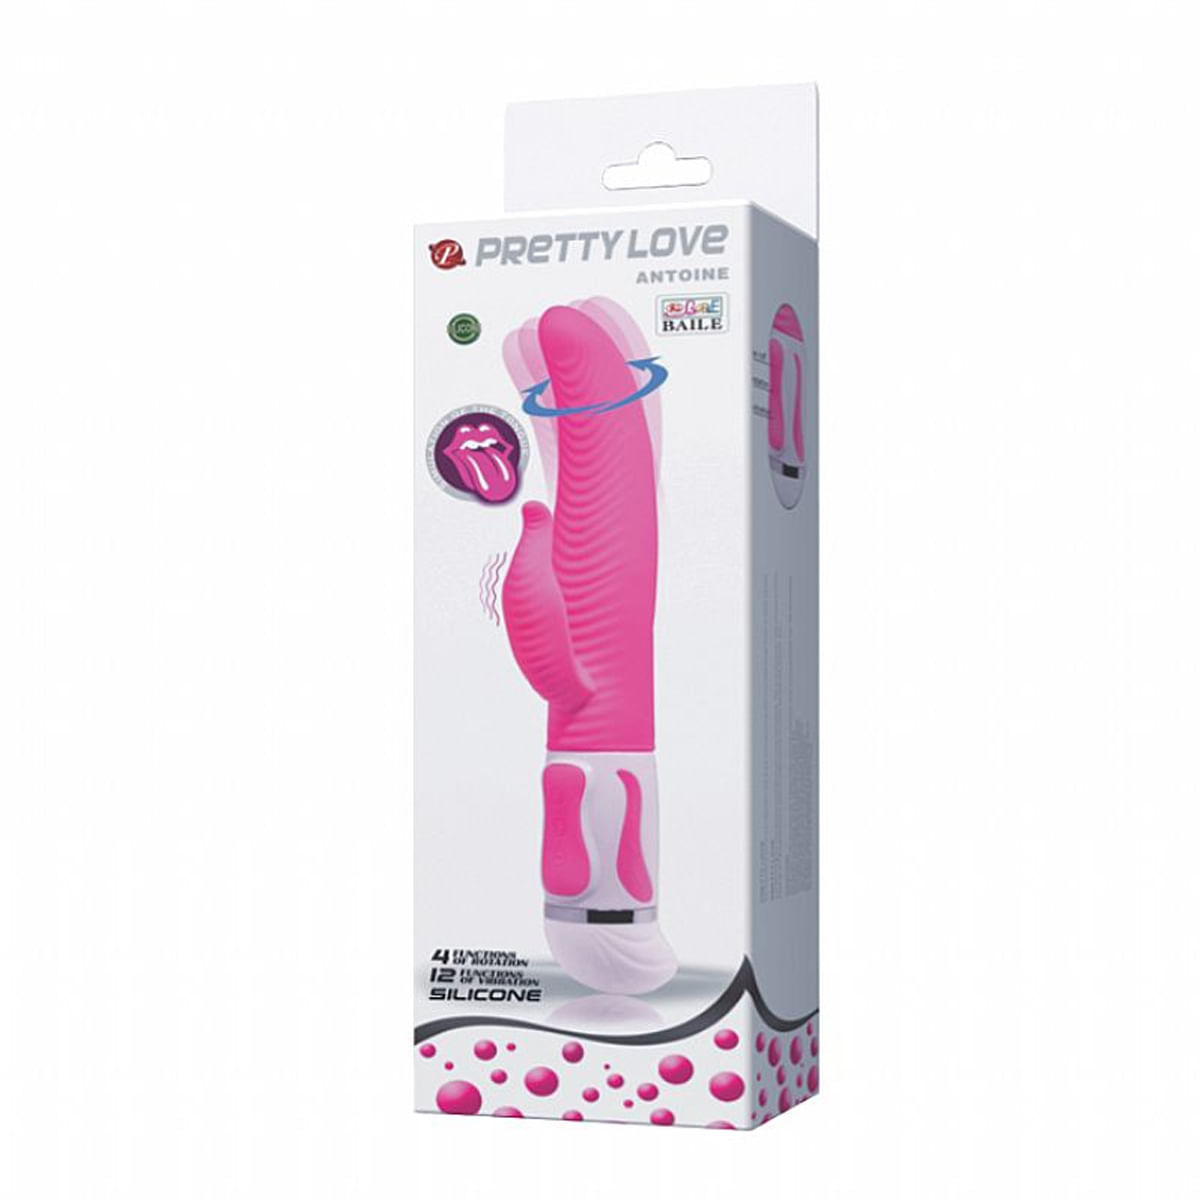 Pretty Love Antoine Vibrador Rotativo com Estimulador 12 Modos de Vibração Sexy Import